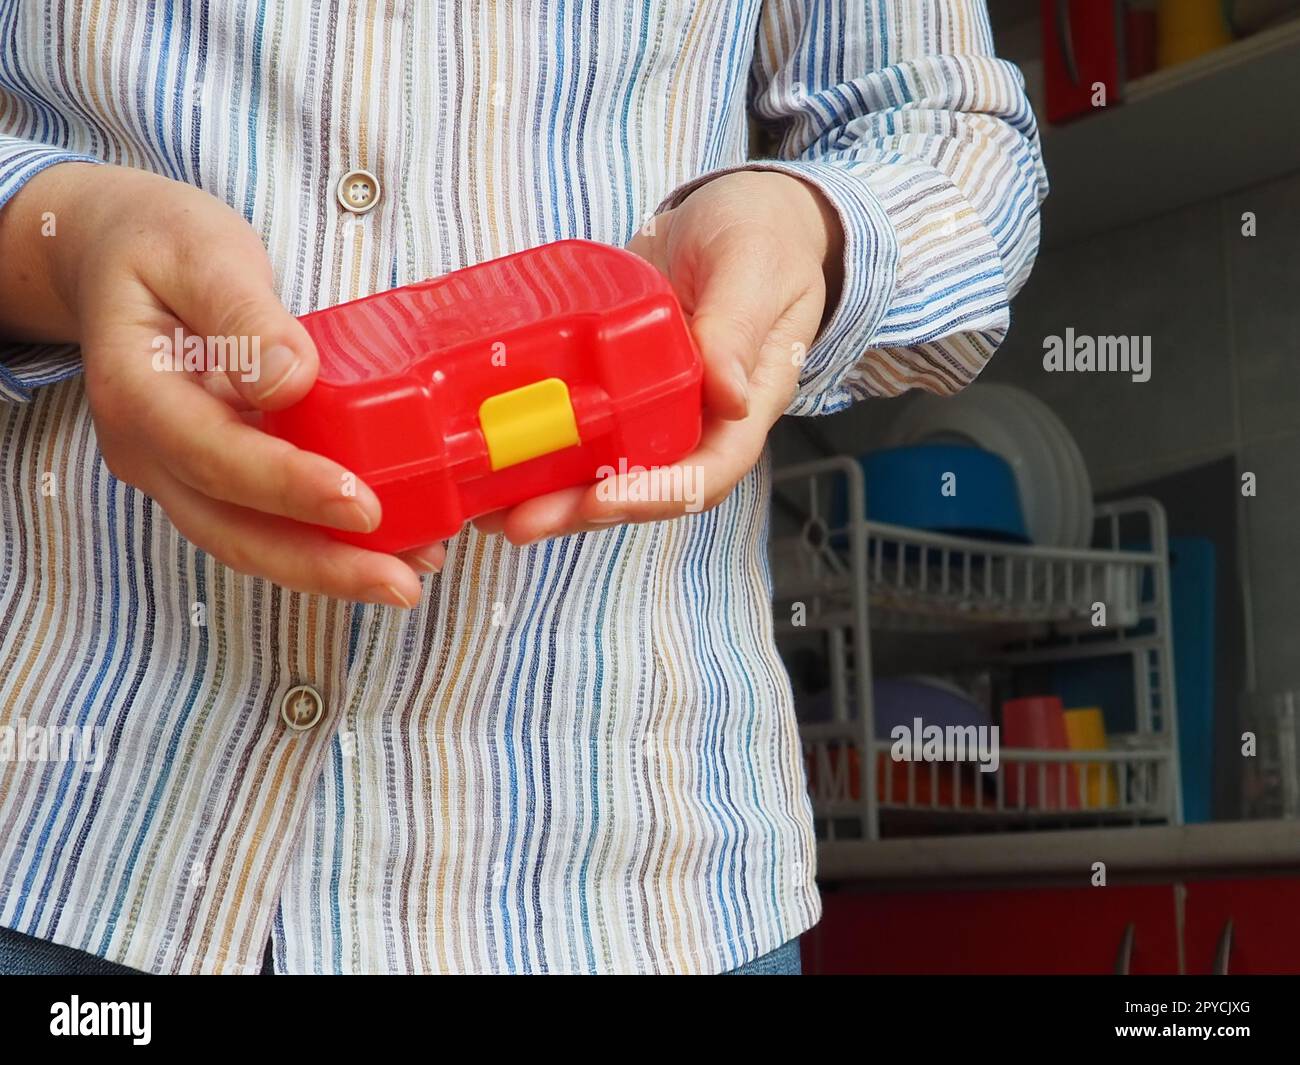 Weibliche Hände halten einen roten geschlossenen Plastikbehälter oder eine Verpackung für Schulessen. Küchenutensilien. Eine Frau in einem weißen gestreiften Hemd zeigt die Brotdose. Thema Lebensmittelhygiene und Recycling Stockfoto